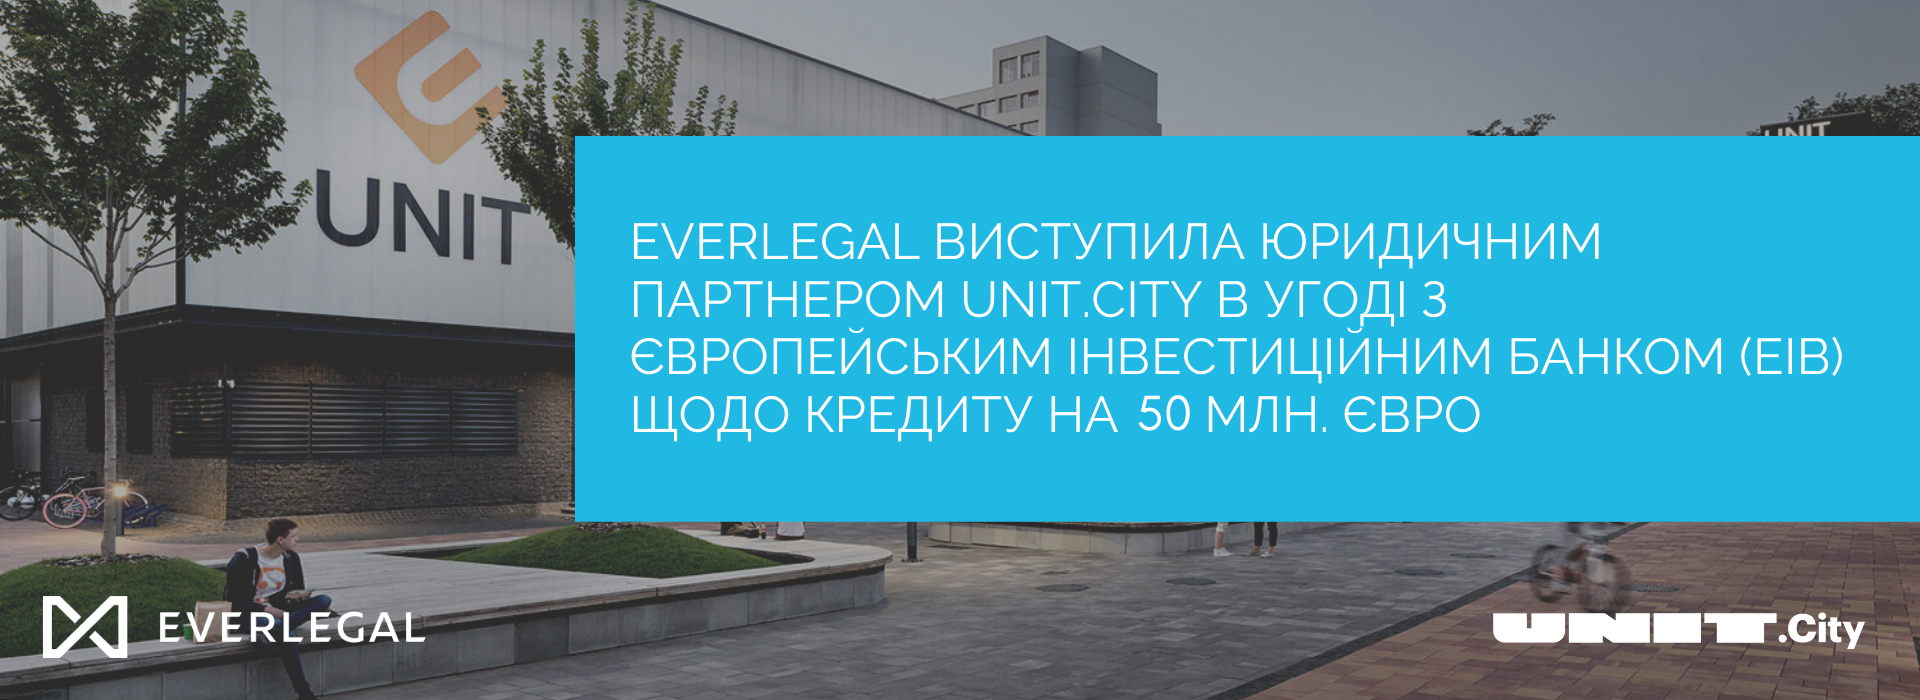 EVERLEGAL виступила юридичним партнером UNIT.City в угоді з Європейським інвестиційним банком (EIB) щодо кредиту на 50 млн. євро